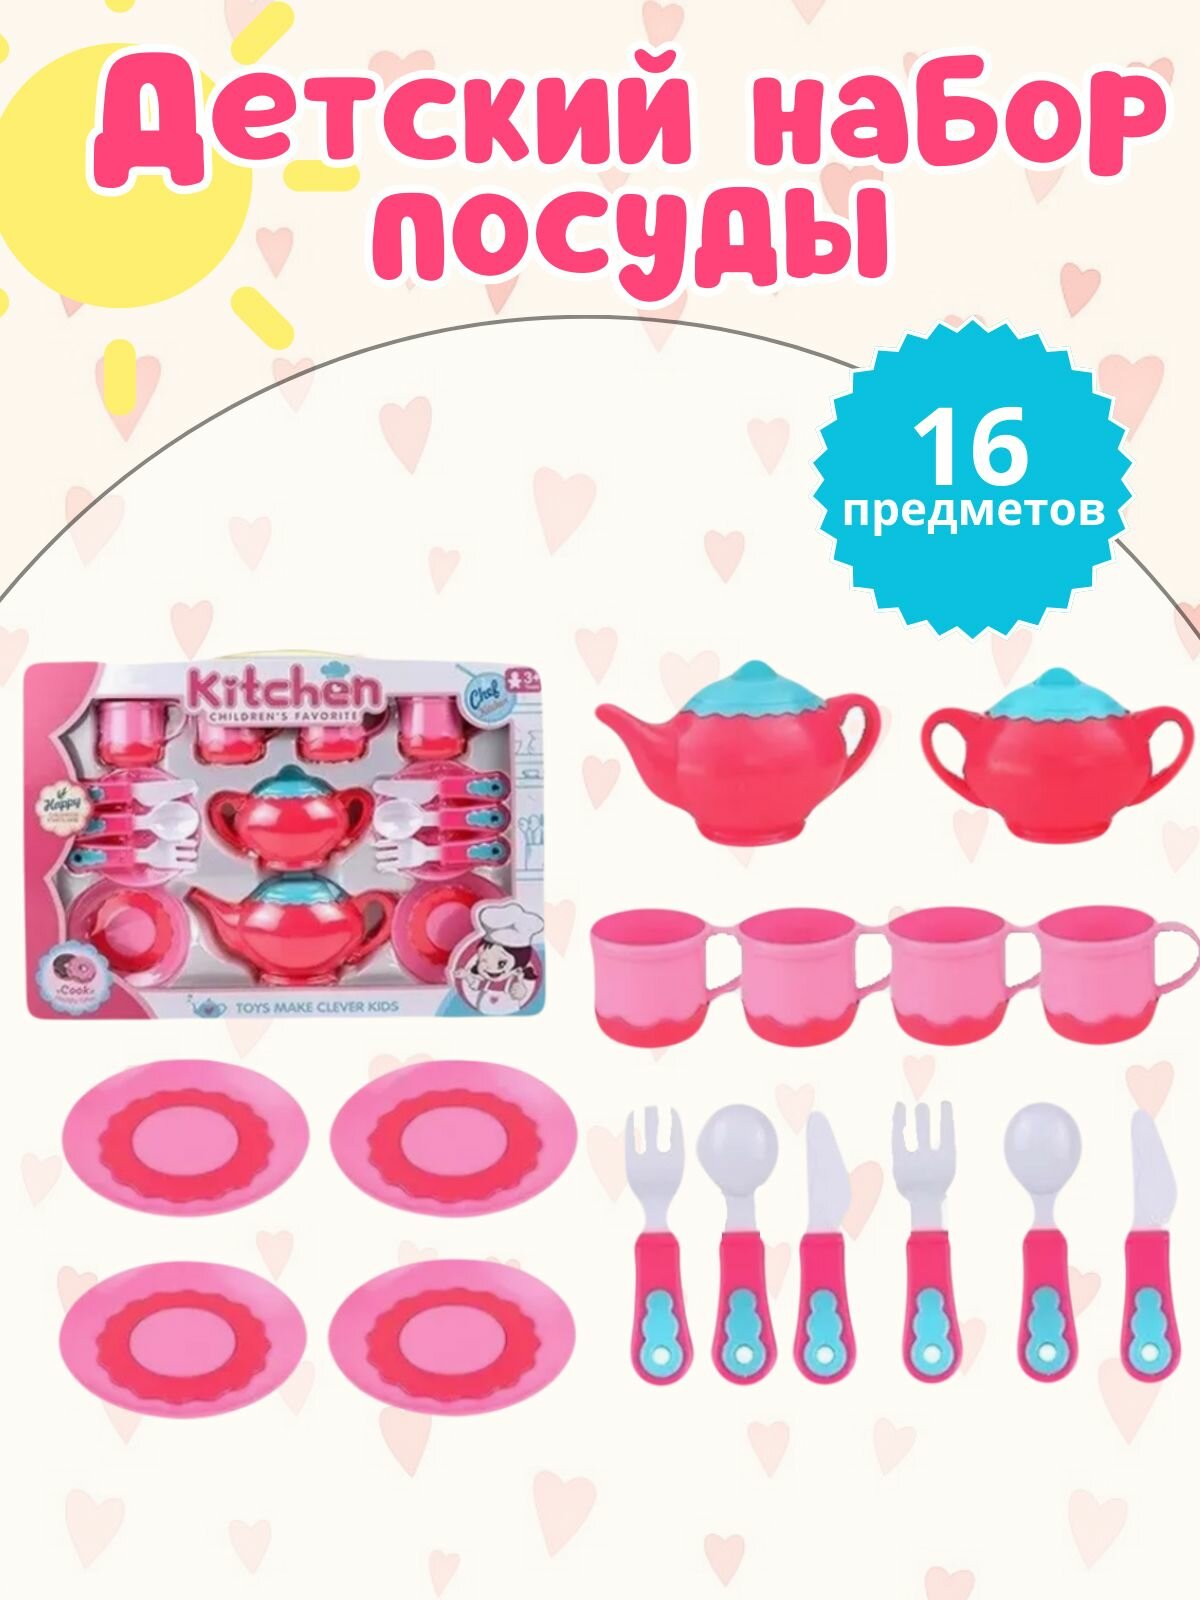 Детский набор кухонной посуды с игрушечными продуктами.